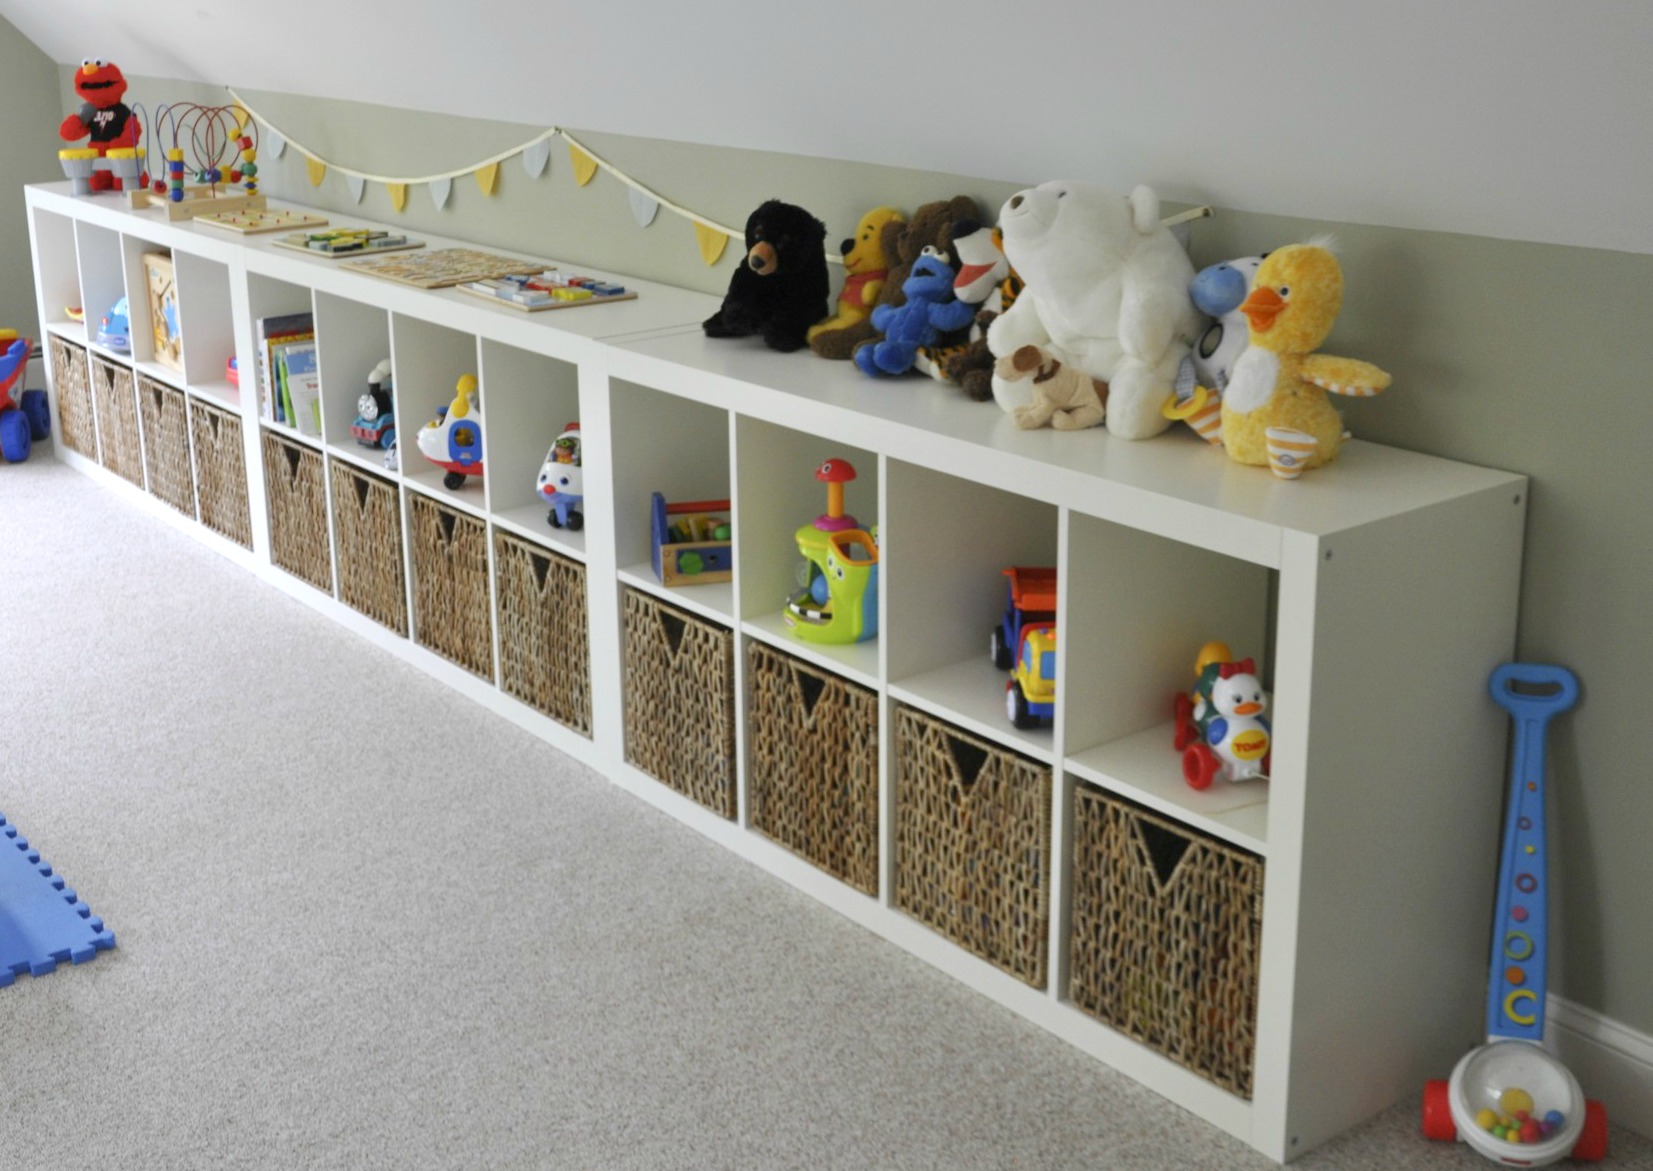 Kids' & Playroom Storage